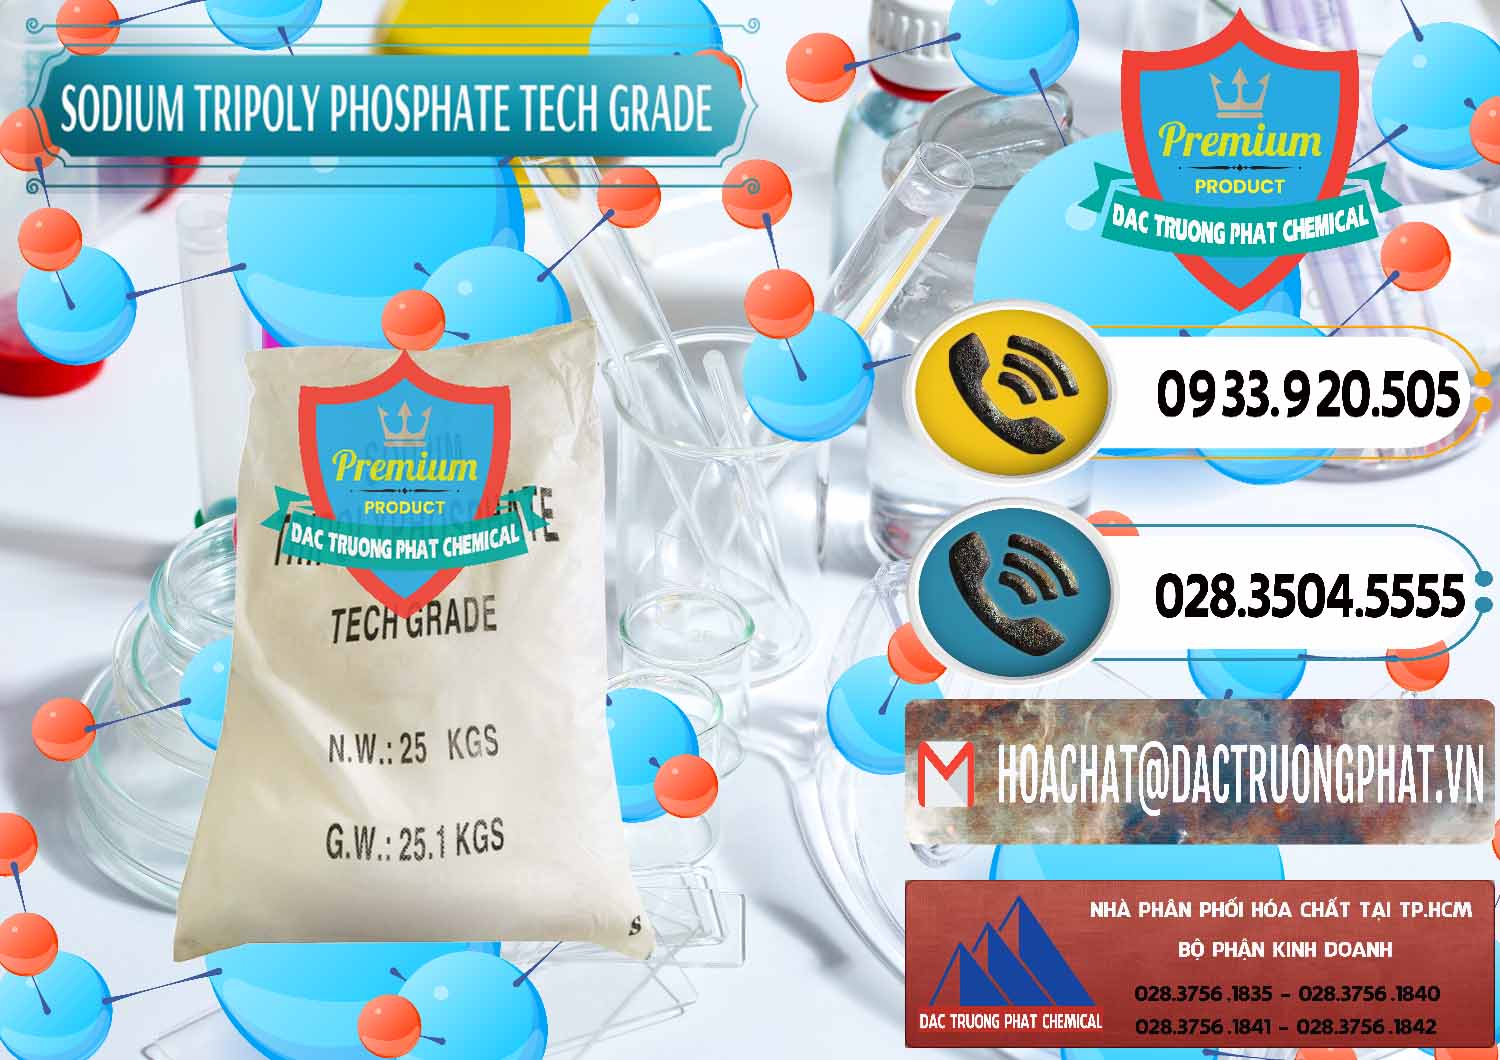 Nơi bán ( cung cấp ) Sodium Tripoly Phosphate - STPP Tech Grade Trung Quốc China - 0453 - Đơn vị chuyên bán - phân phối hóa chất tại TP.HCM - hoachatdetnhuom.vn